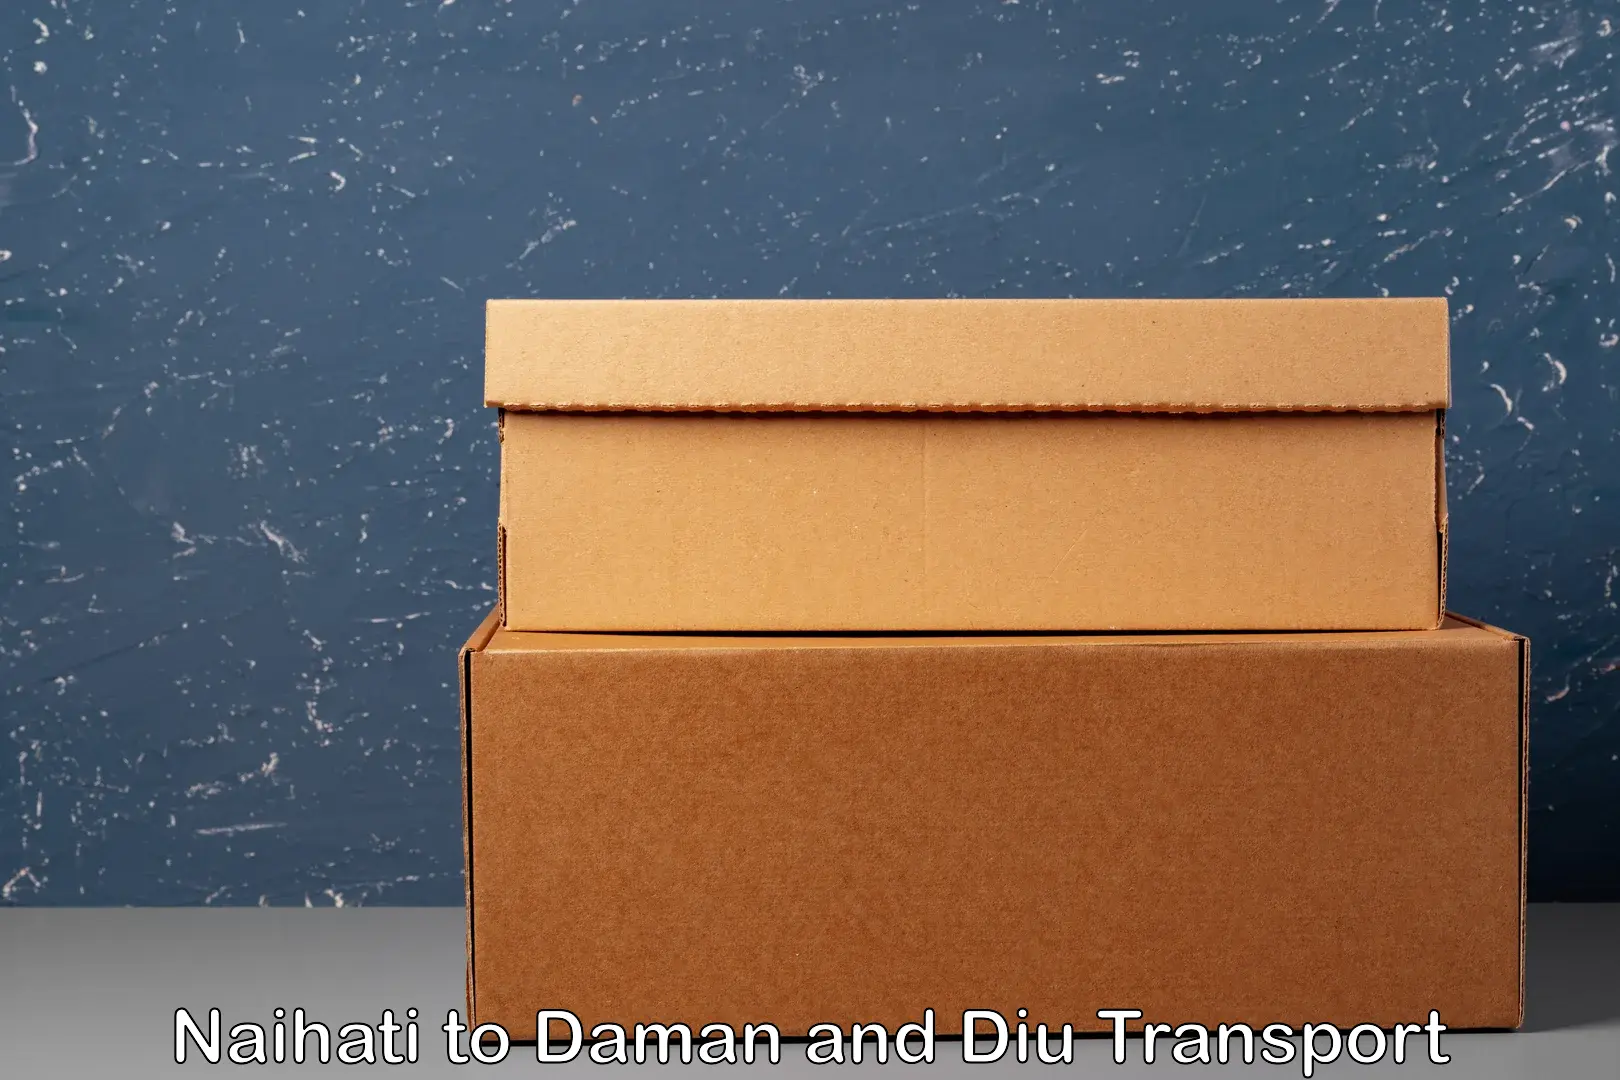 Cargo transport services Naihati to Daman and Diu